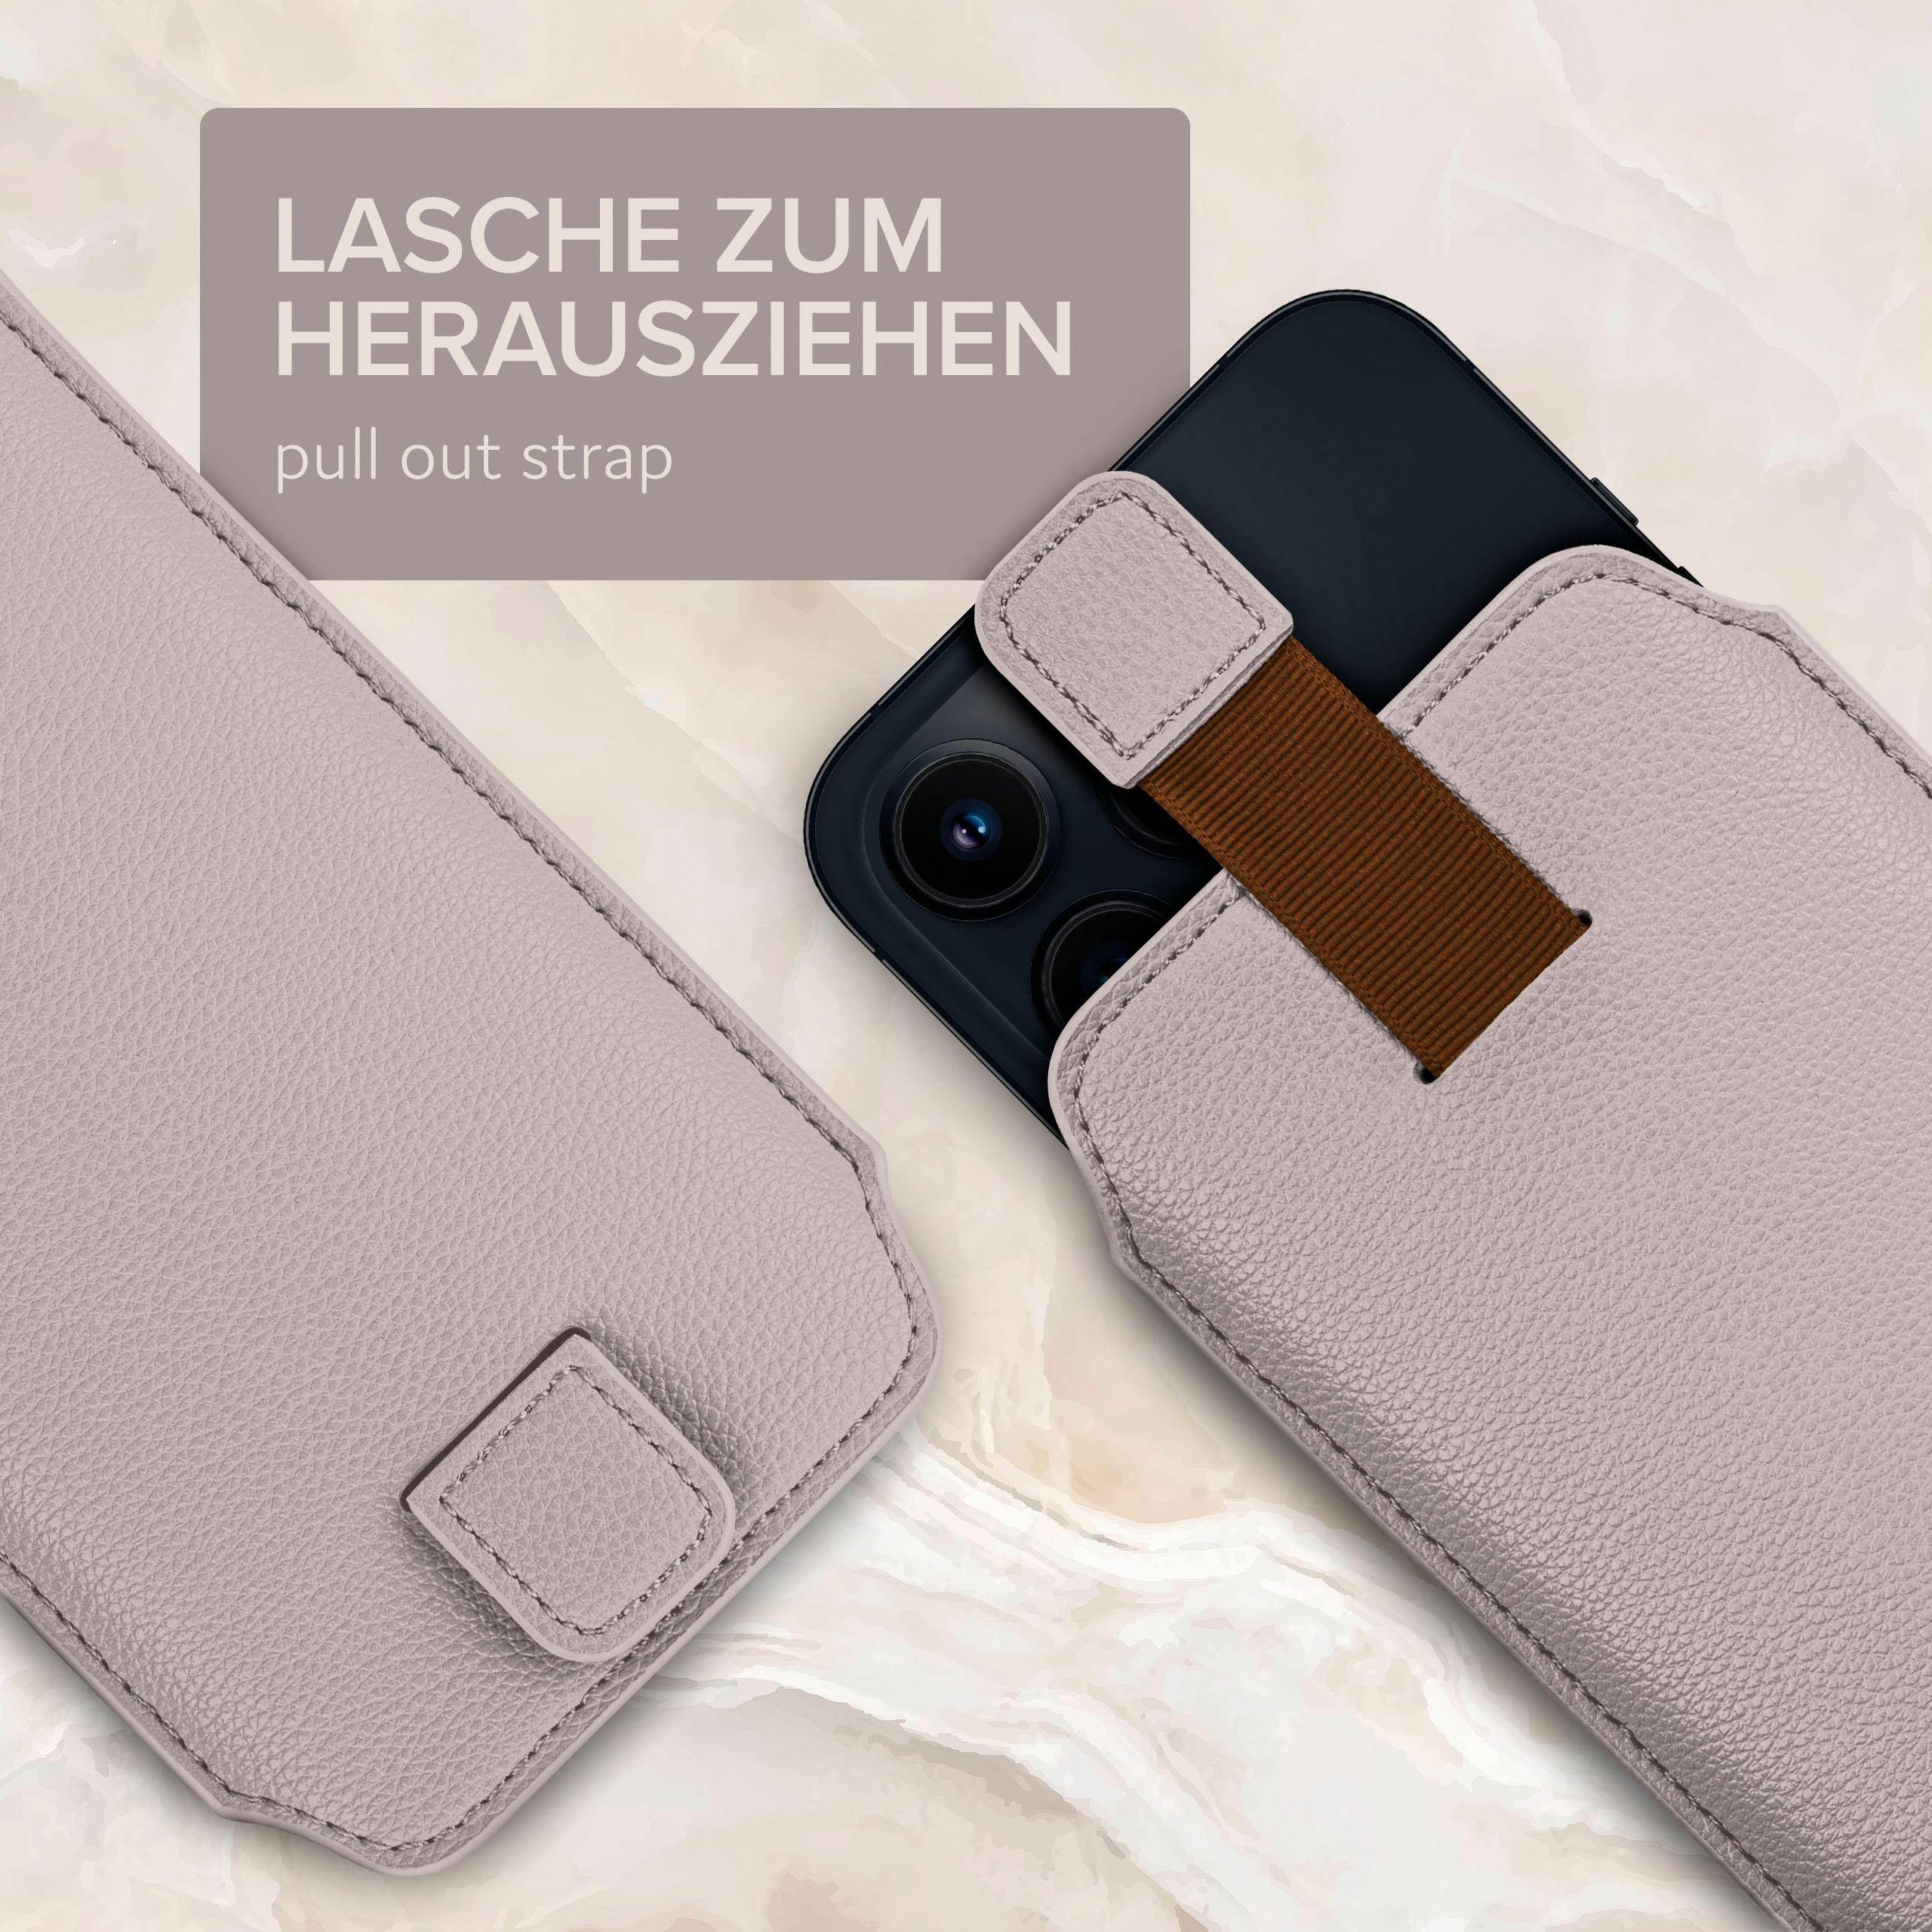 ONEFLOW Einsteckhülle Nord, OnePlus, mit Full Hellgrau Cover, Zuglasche